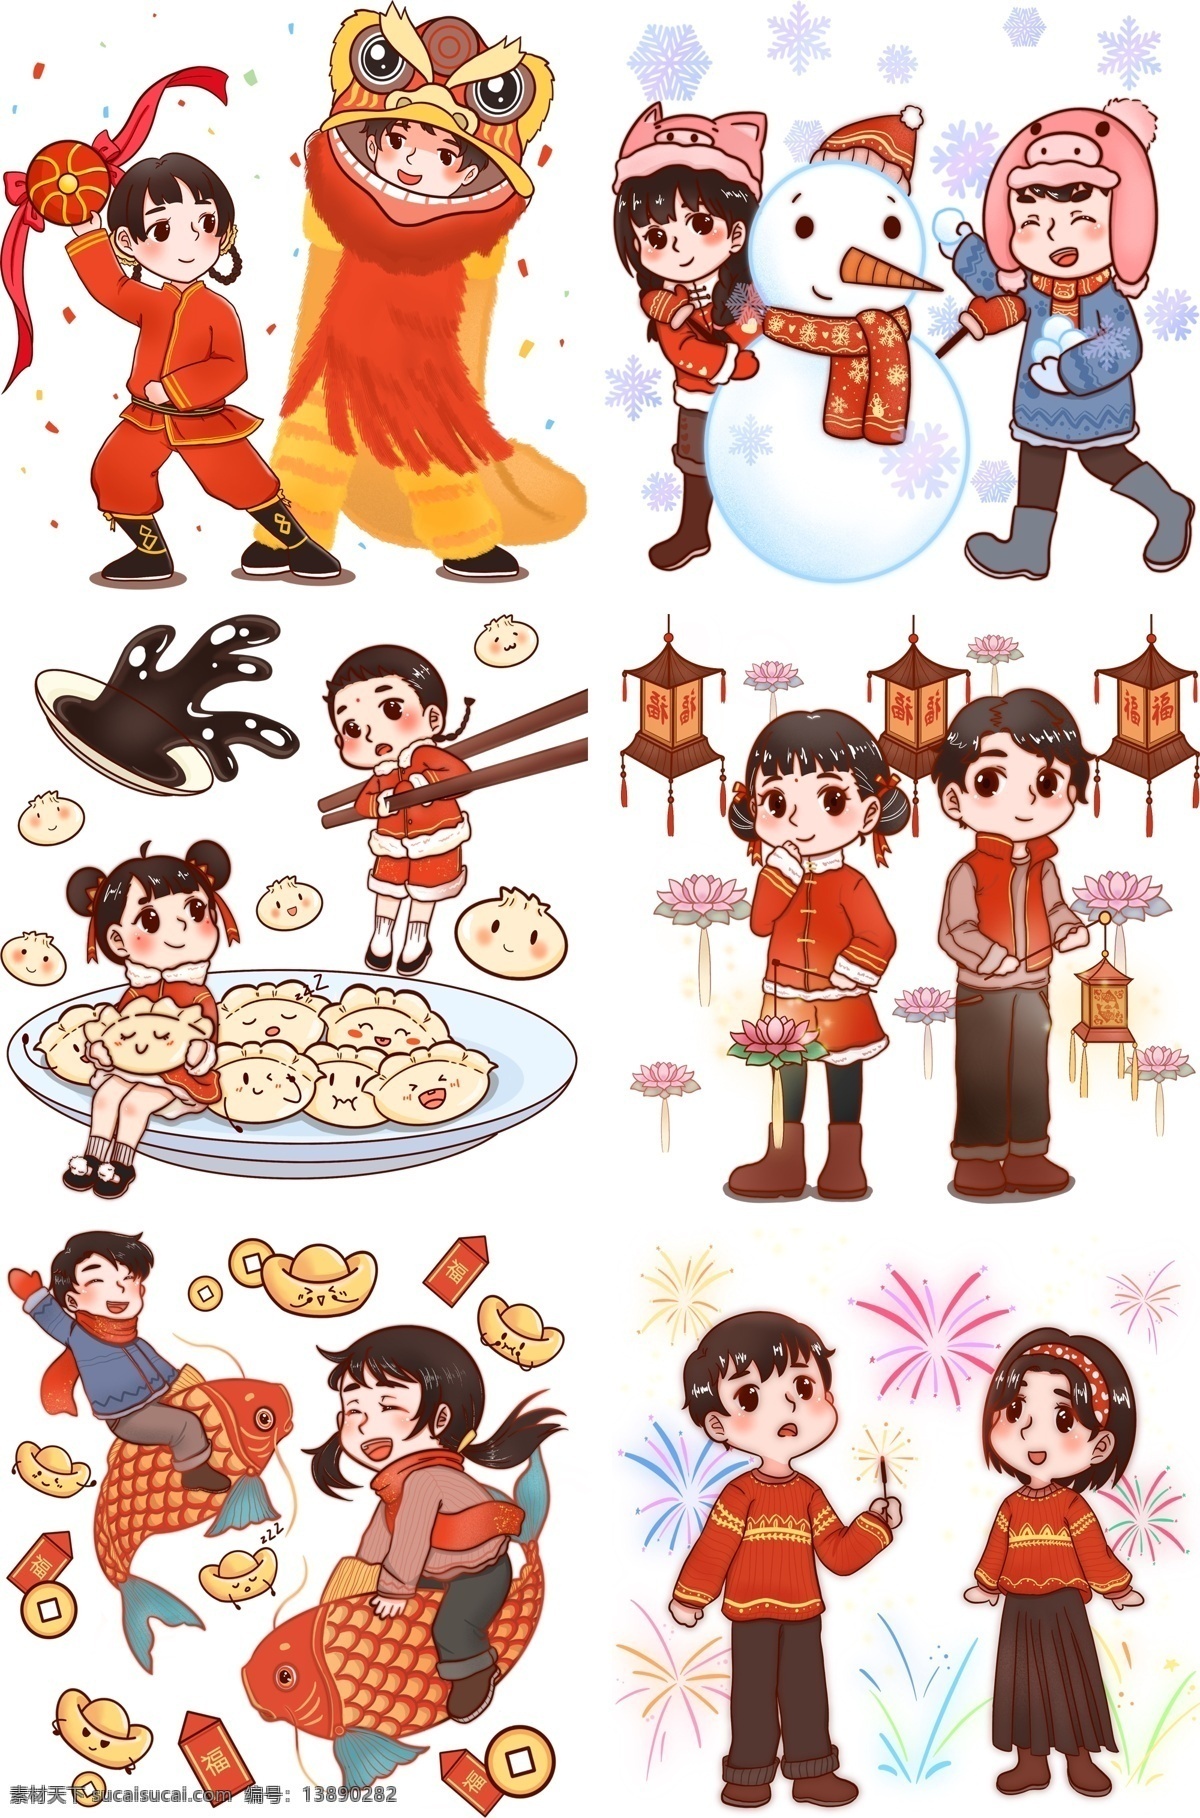 新年 2019 年 中国 孩子 拜年 过年 中国红 中国风 舞狮 装饰画 2019年 中国服饰 绣球 传统民俗 卡通风格 节日习俗